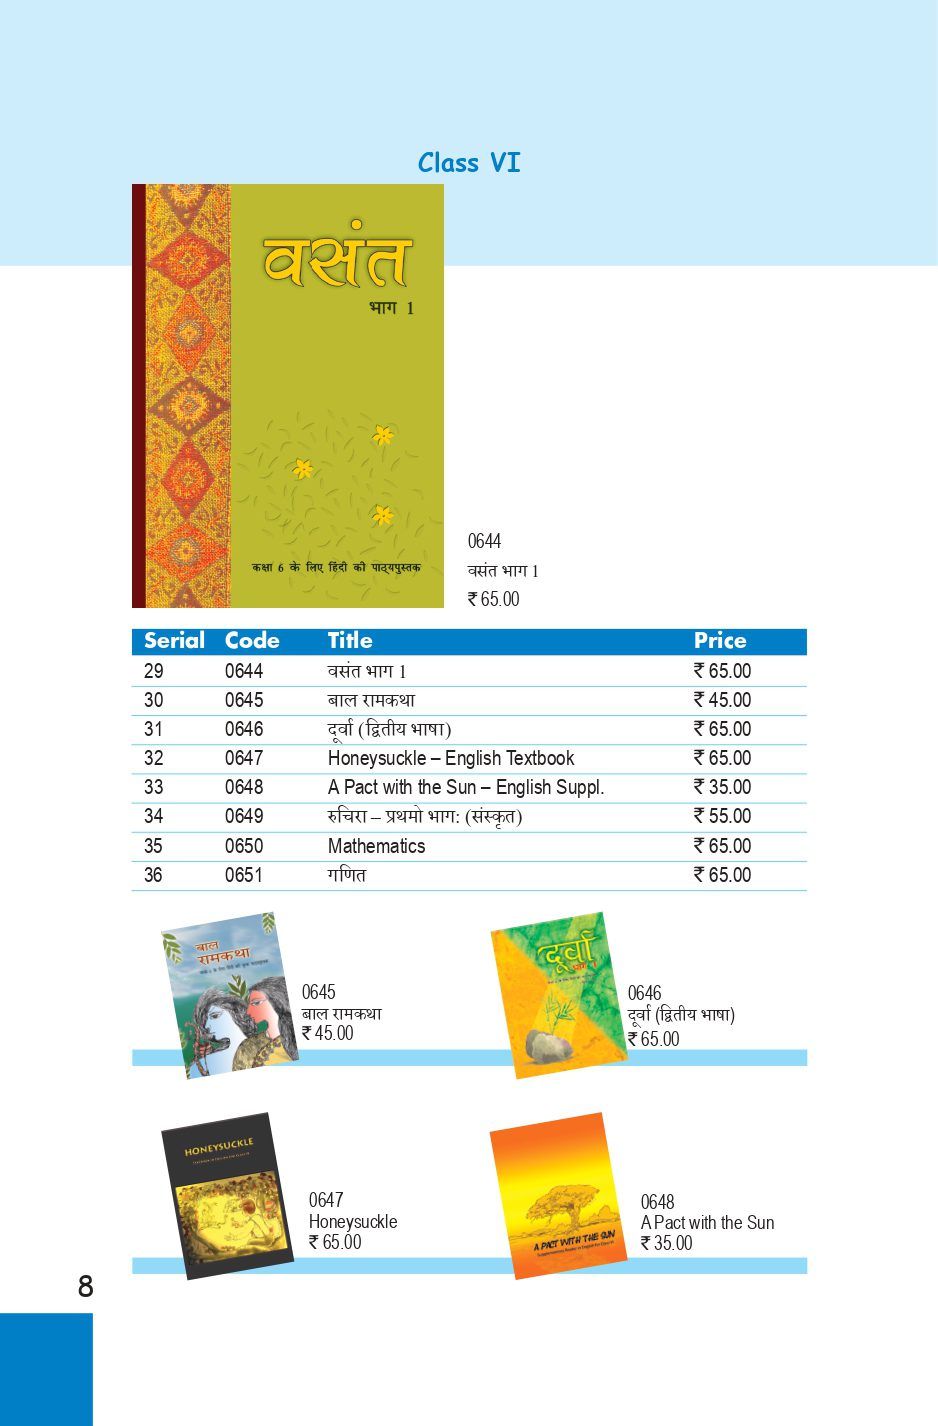 NCERT Class 6 Book PDF Download